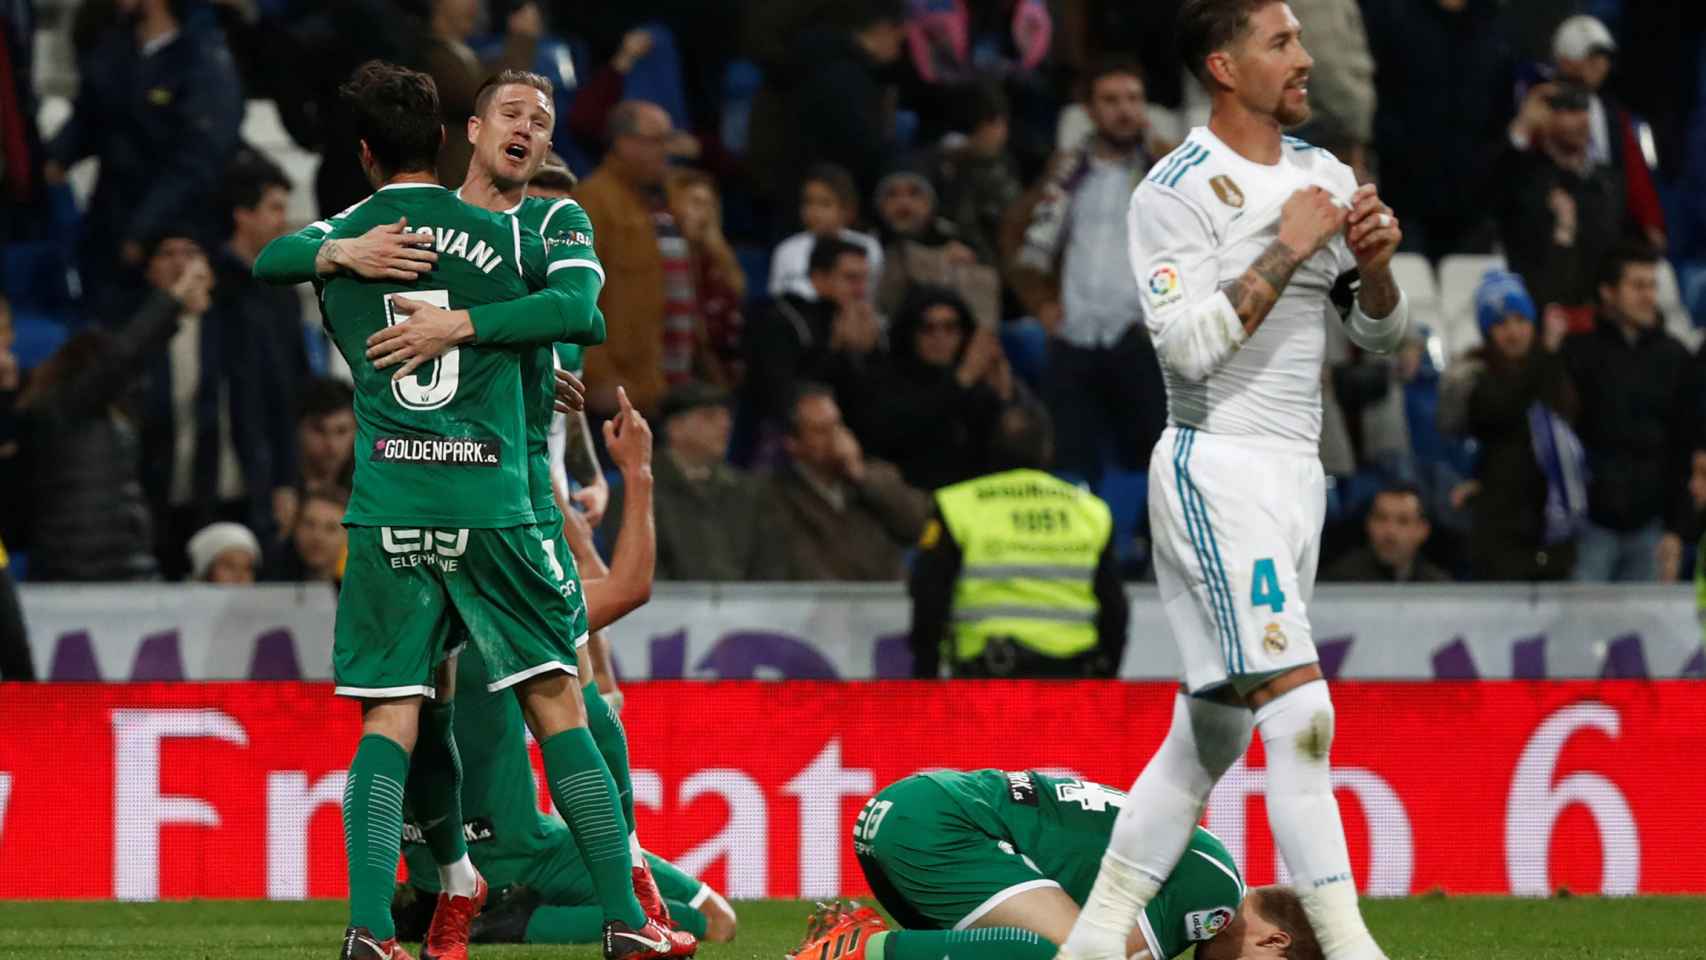 El Leganés hizo historia en el Bernabéu al imponerse al Real Madrid 1-2 para meterse en semifinales. / Reuters